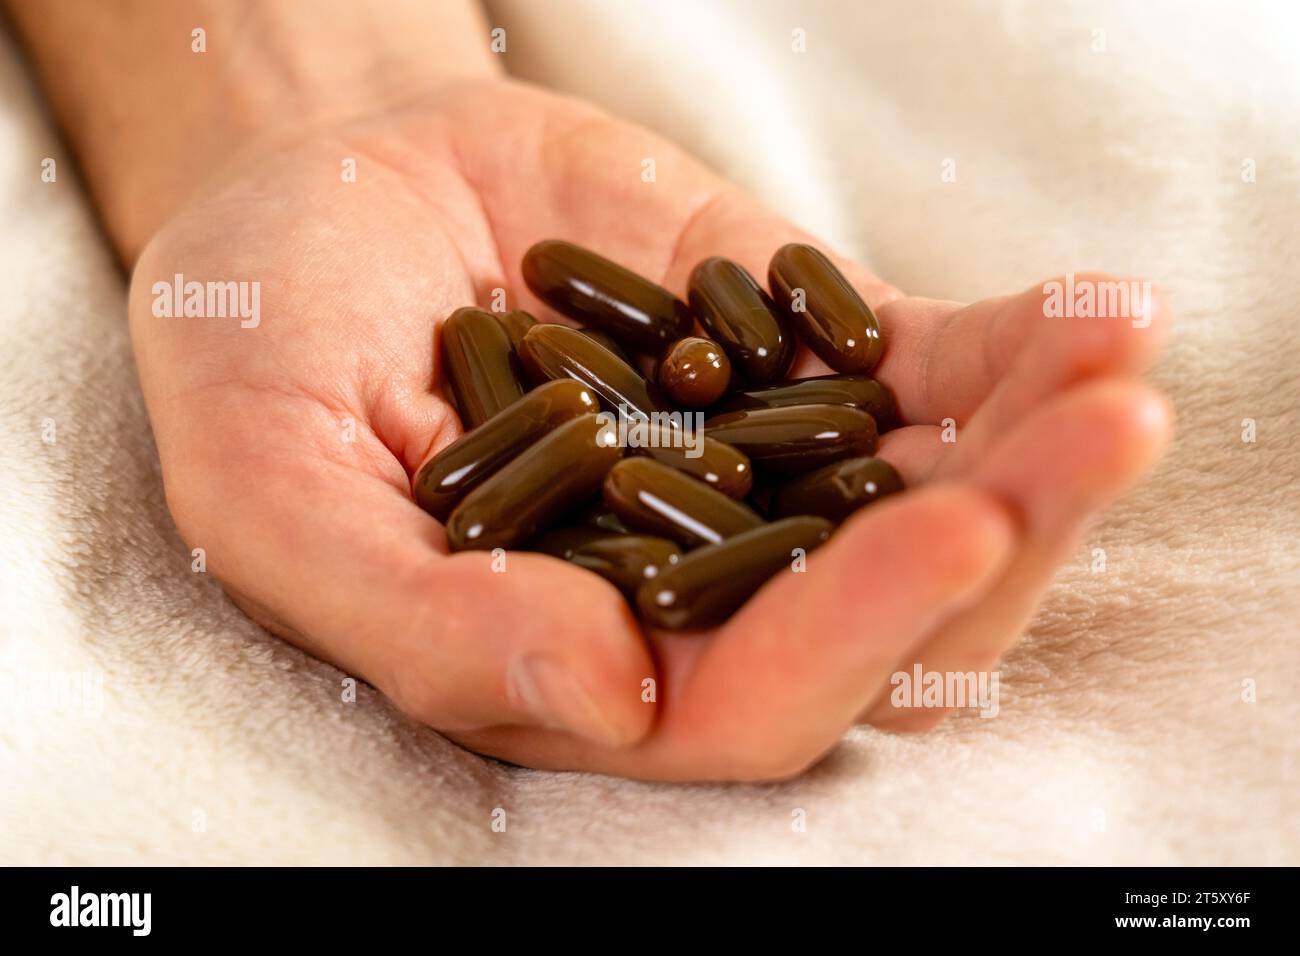 Männliche Hand mit Pillen auf dem Bett. Arzneimittelüberdosiskonzept Stockfoto